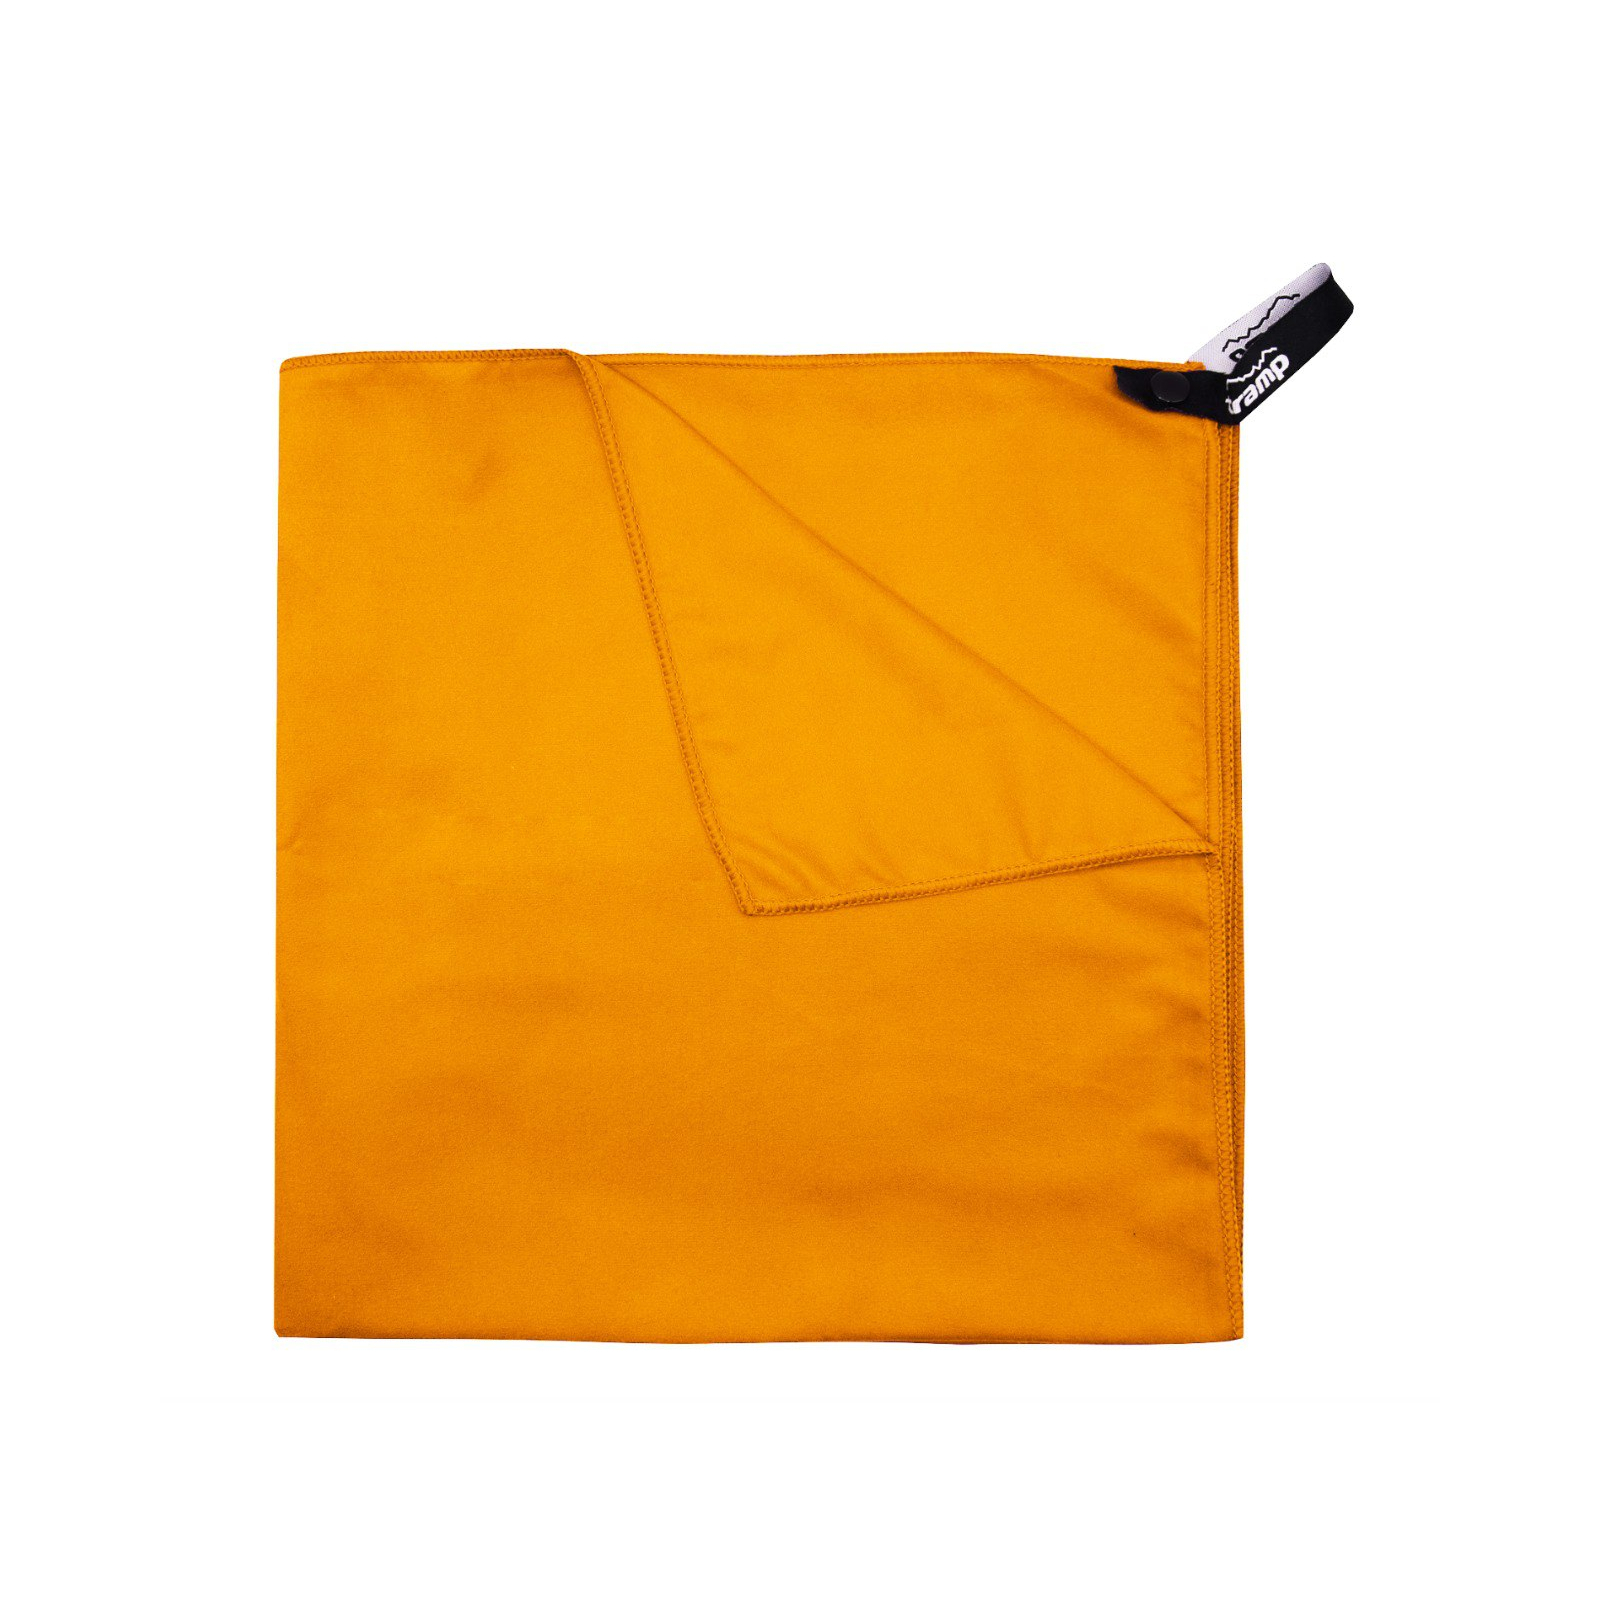 Полотенце Tramp з мікрофібри в чохлі Pocket Towel 50х100 M Navy (UTRA-161-M-navy) изображение 5